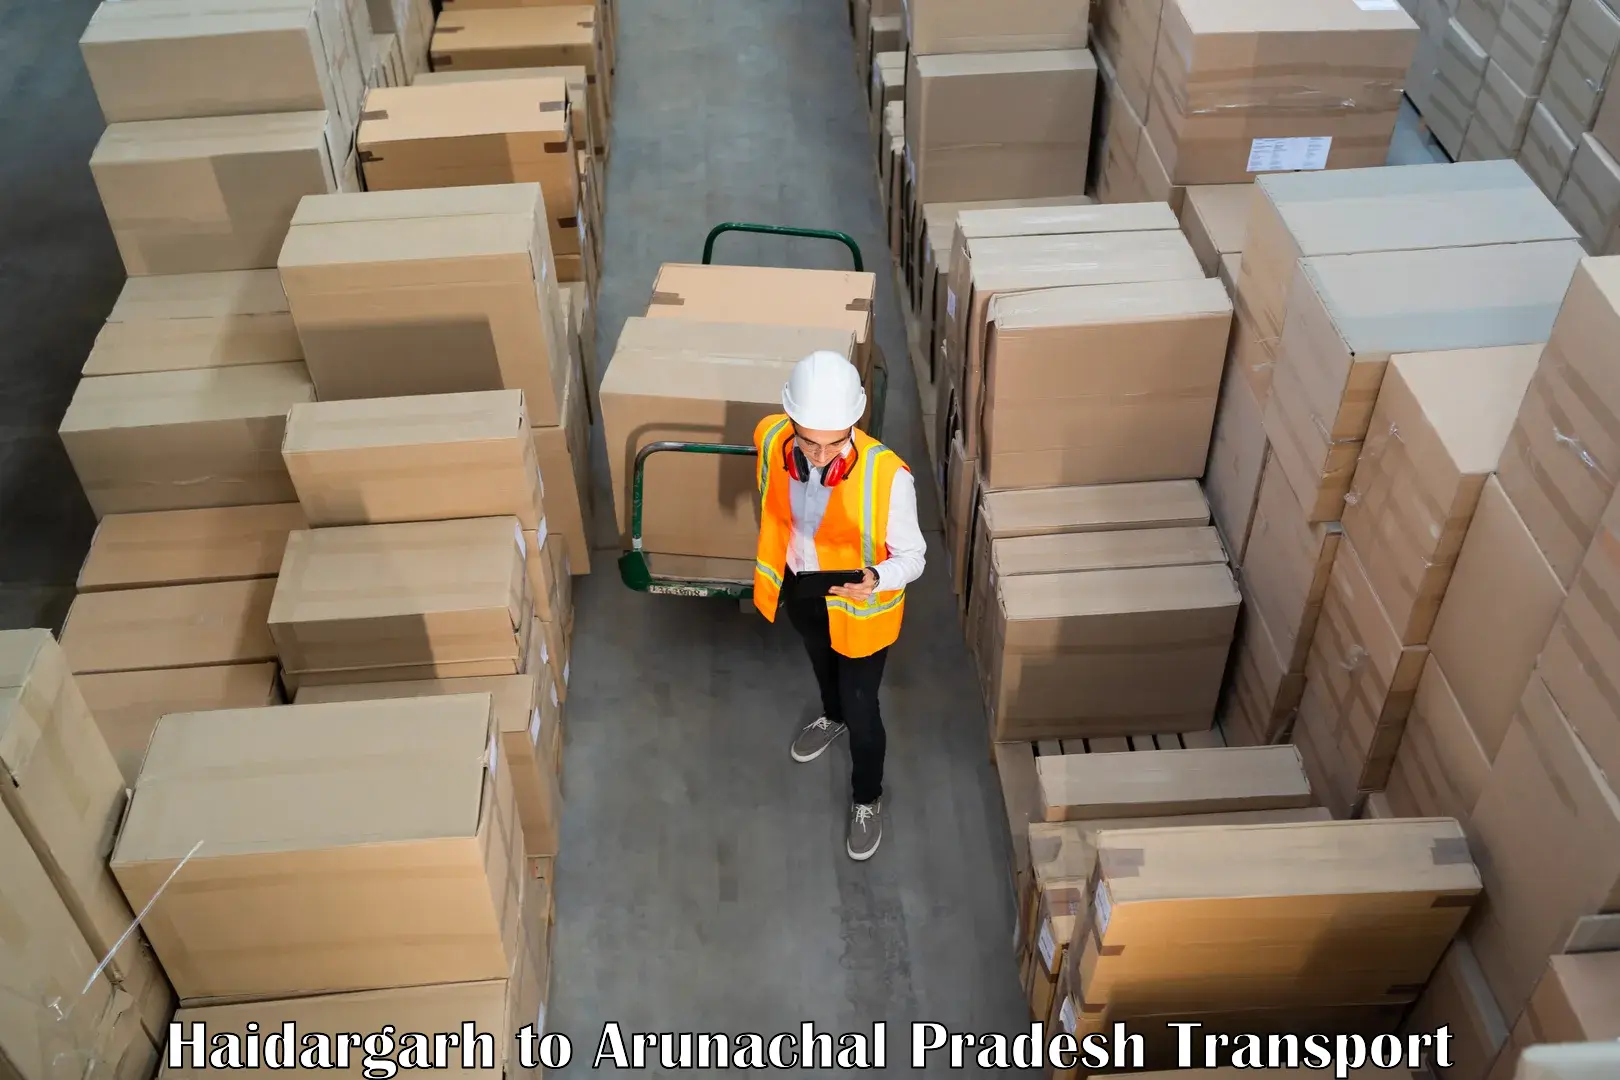 Package delivery services Haidargarh to Arunachal Pradesh